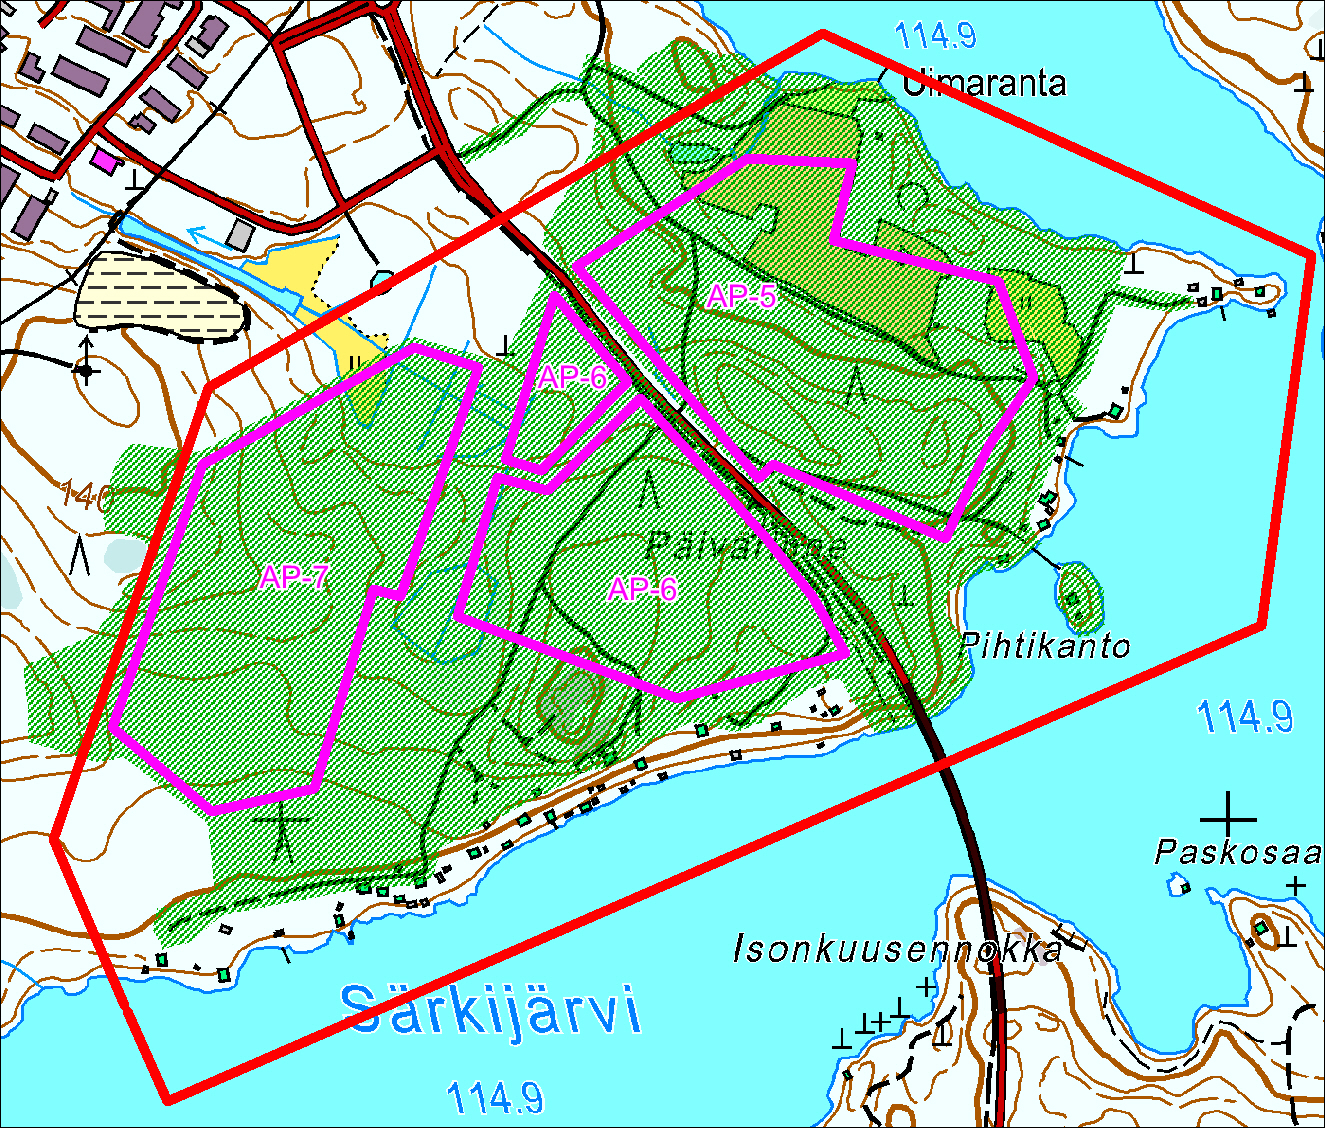 Kuva 2. Yleissuunnitelma-alue ja tarkastetut alueet. Yleissuunnitelma-alueen raja punaisella viivalla, tarkastetut alueet rasteroitu vihreällä. Pohjakartta Maanmittauslaitos.